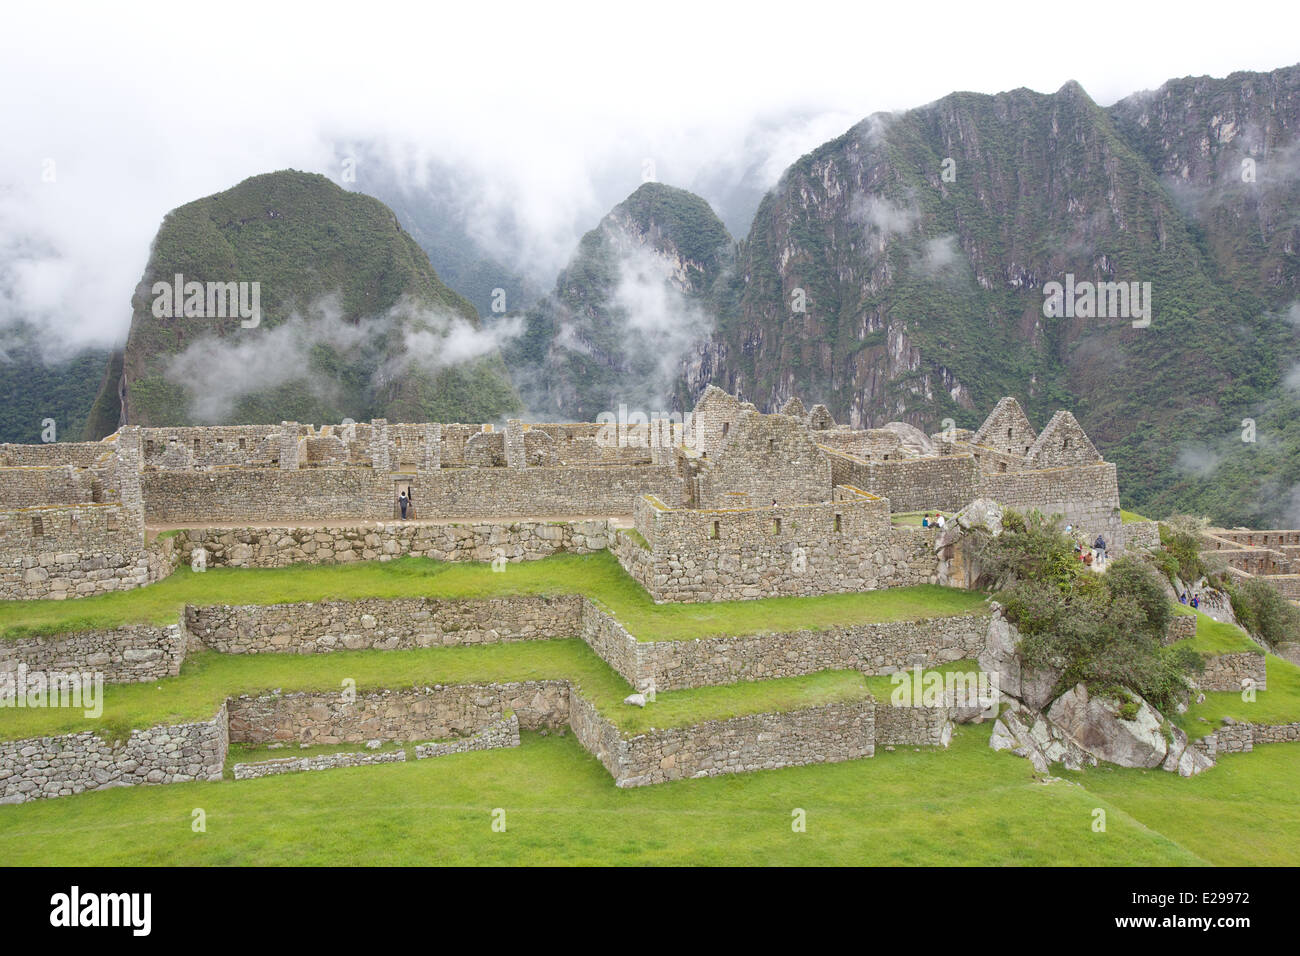 Belle et mystérieuse Machu Picchu, la ville perdue des Incas, dans les Andes péruviennes, au lever du soleil. Banque D'Images